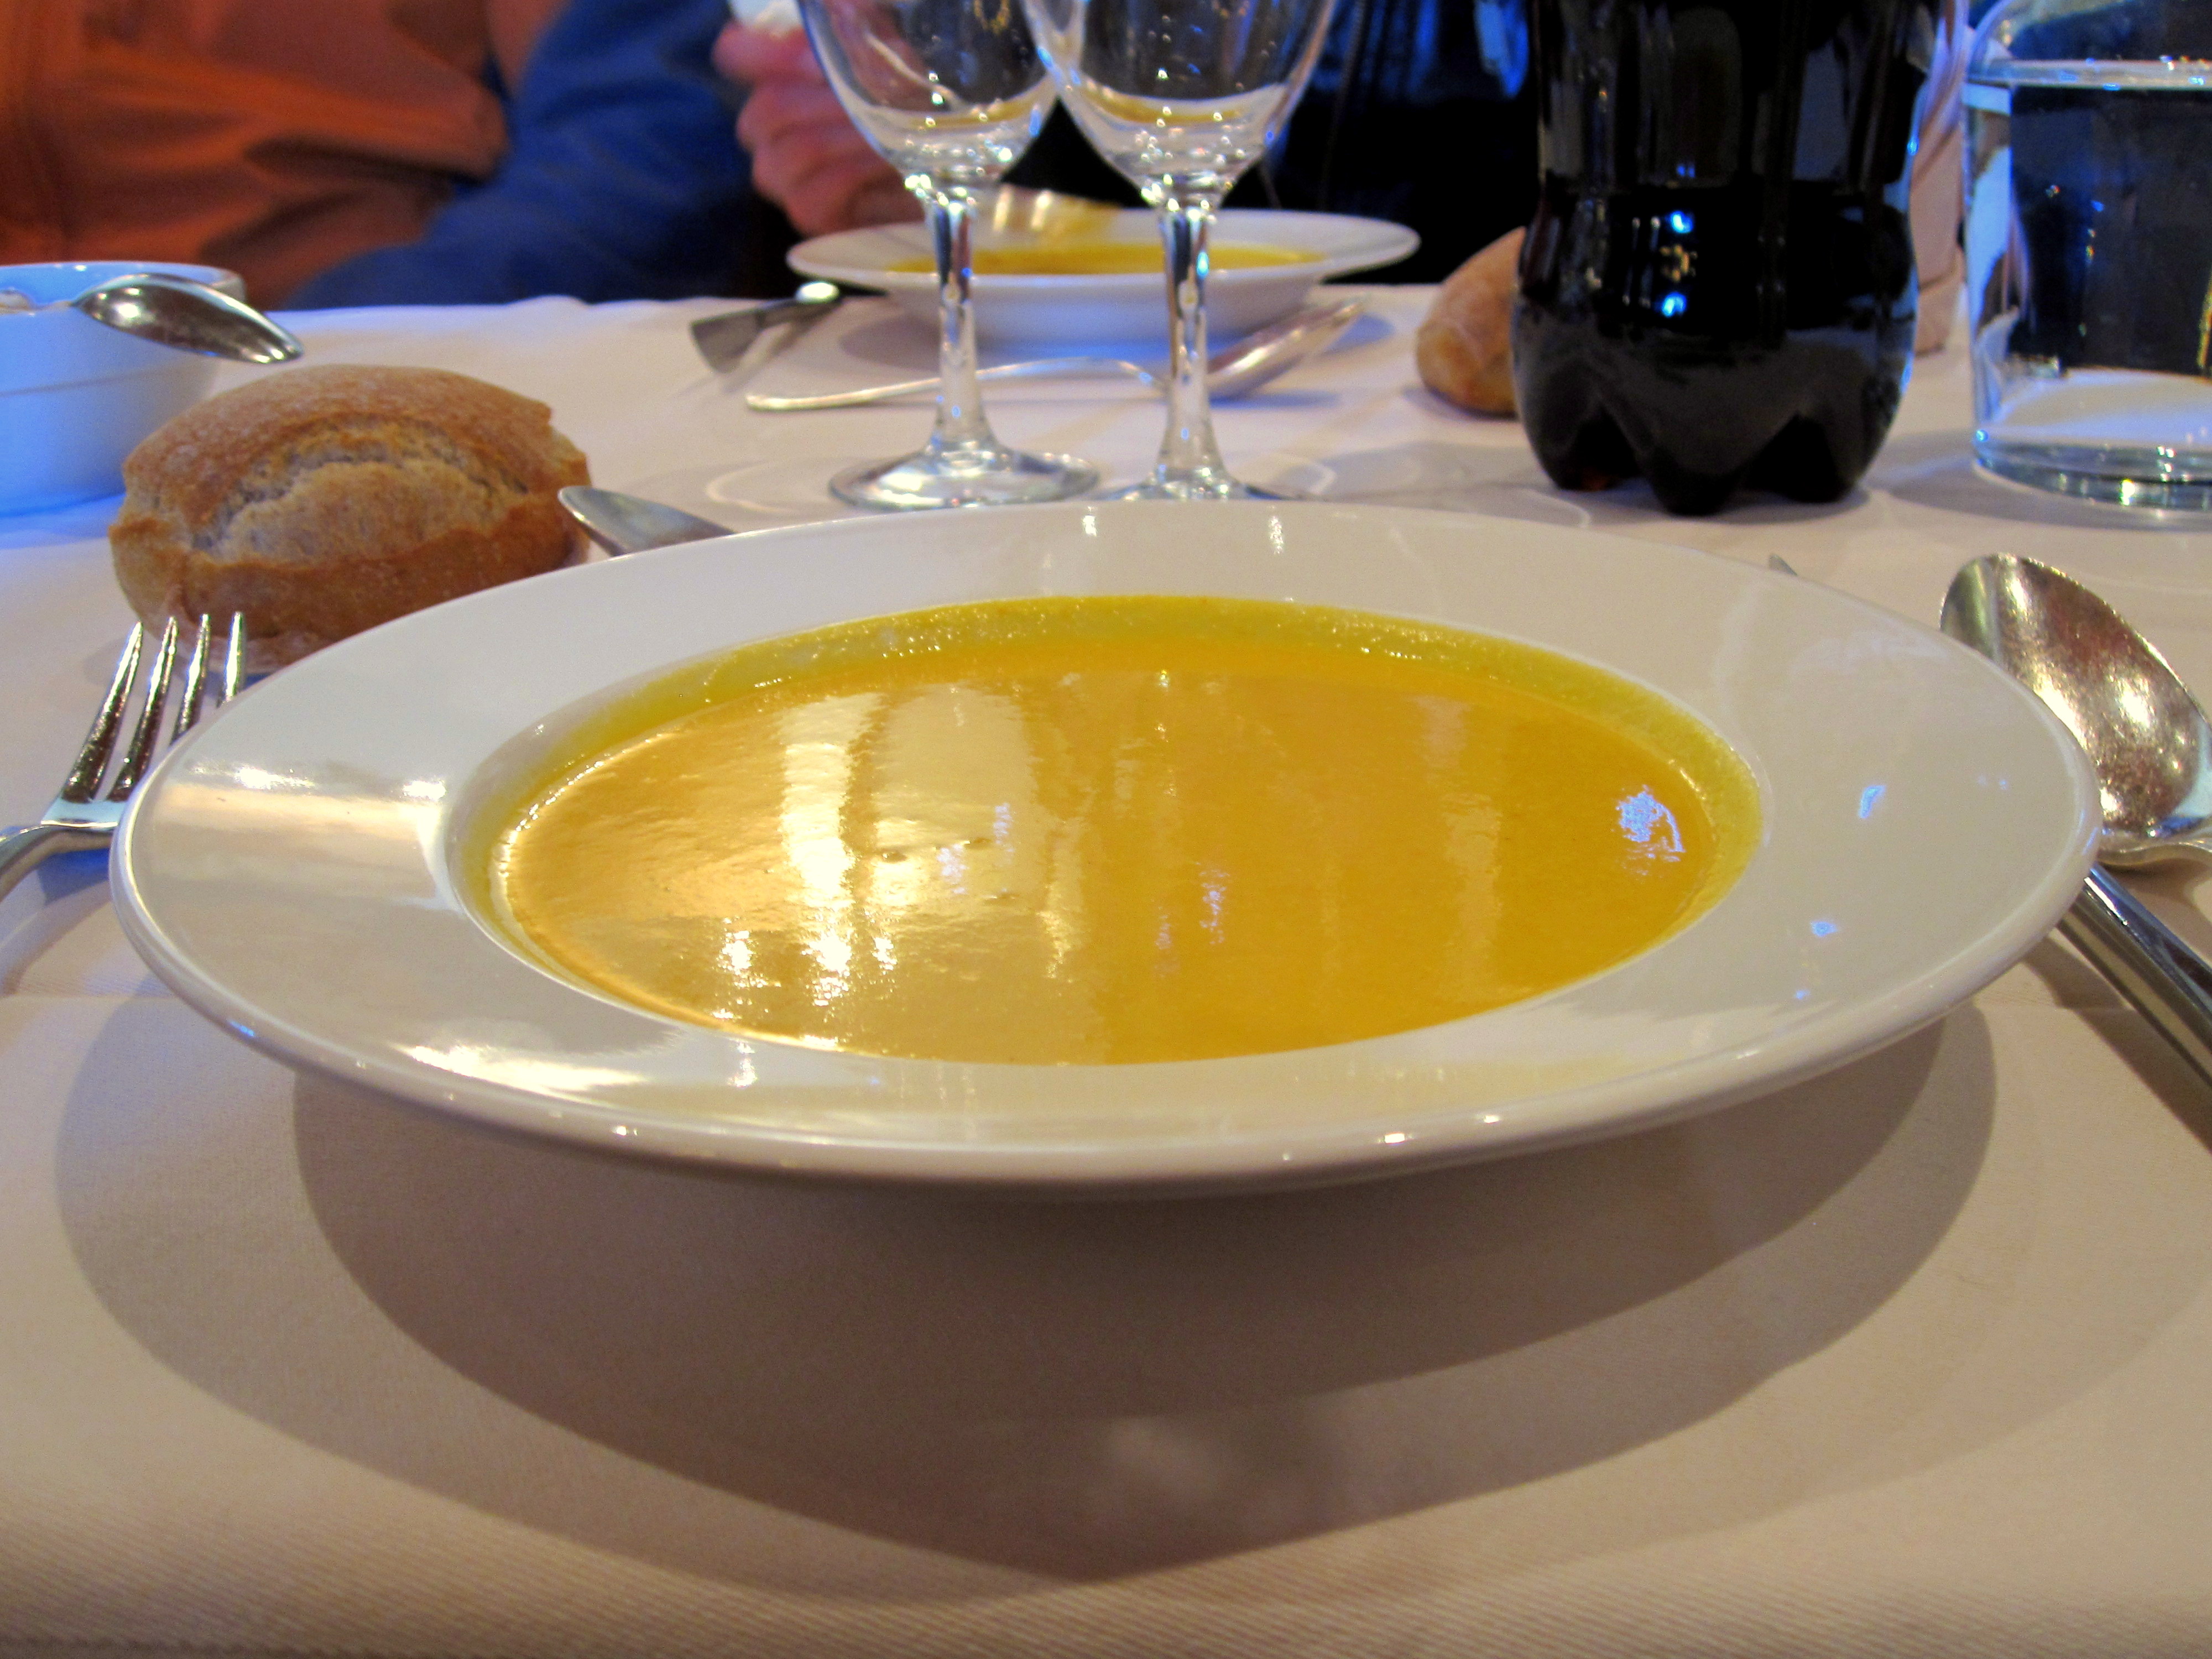 Ce soup était si bon!